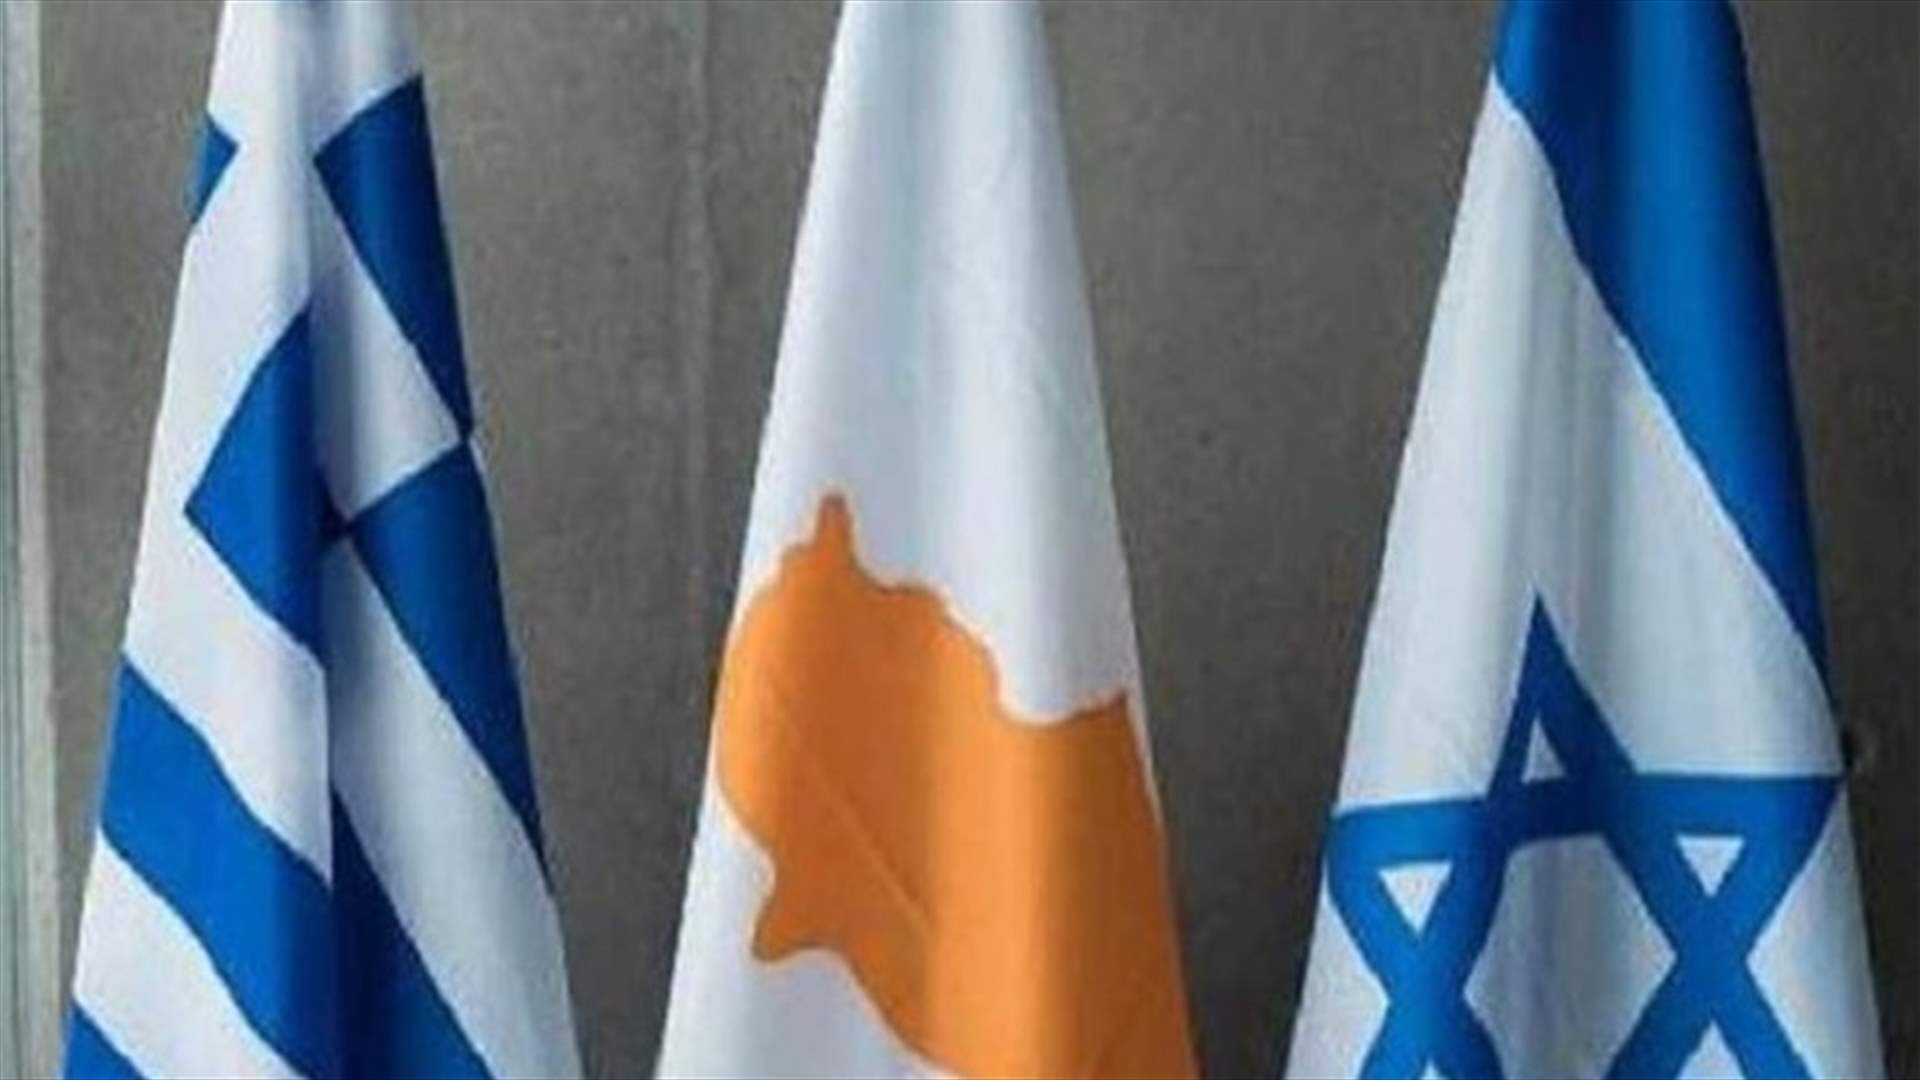 توقيع اتفاق ربط كهربائي بين إسرائيل وقبرص واليونان